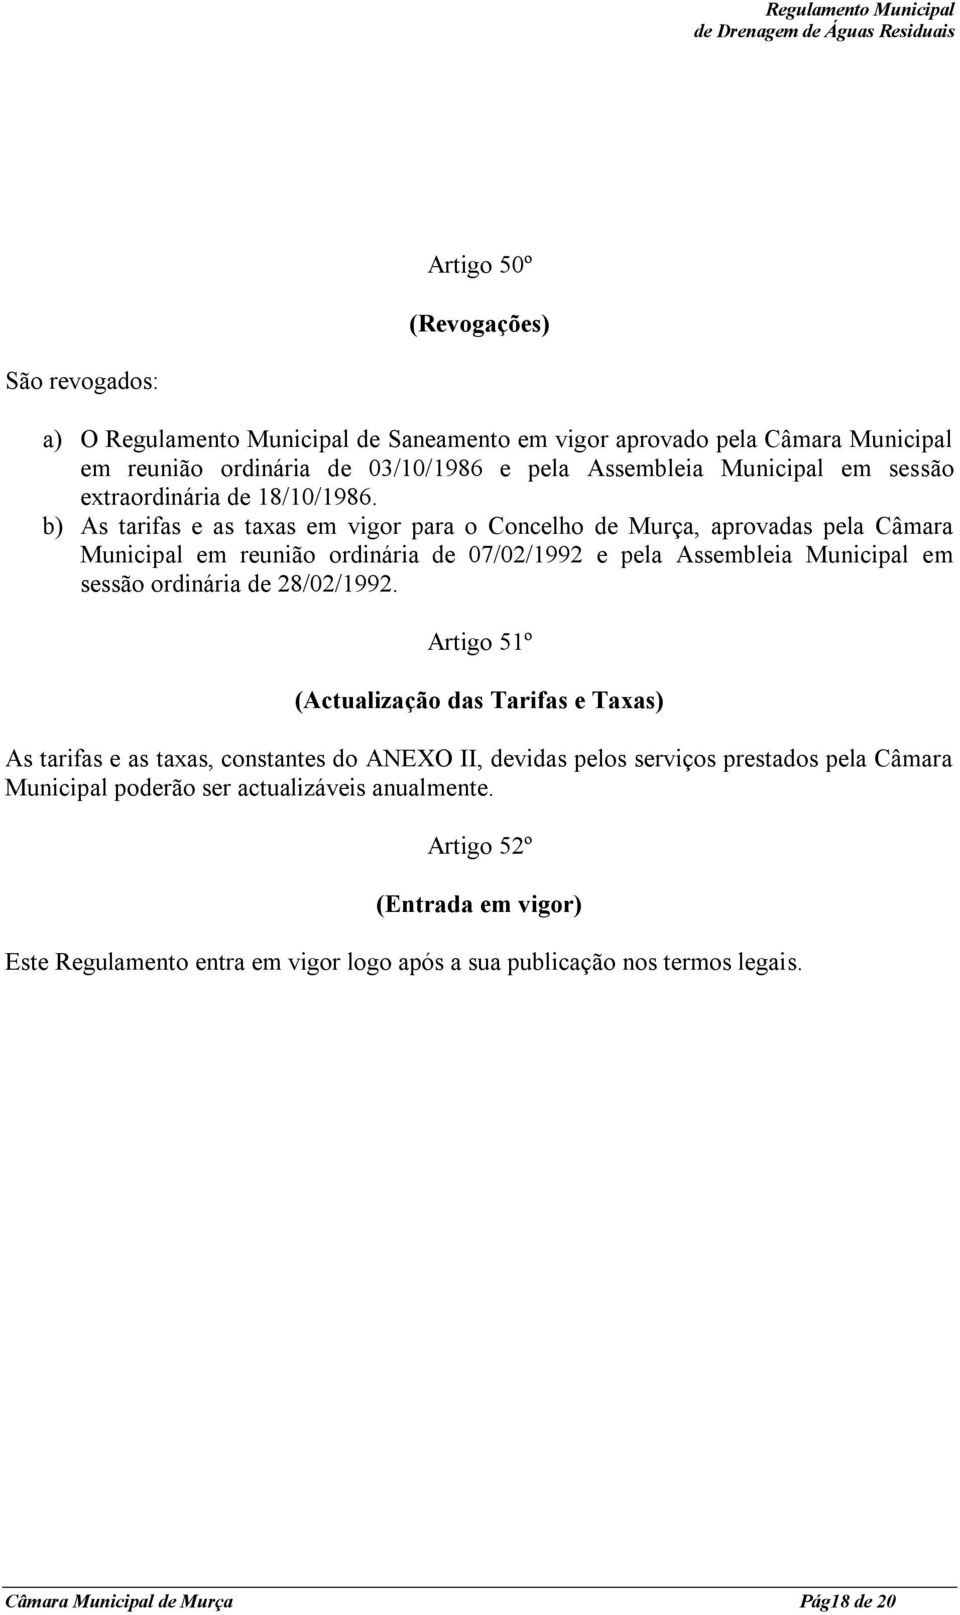 b) As tarifas e as taxas em vigor para o Concelho de Murça, aprovadas pela Câmara Municipal em reunião ordinária de 07/02/1992 e pela Assembleia Municipal em sessão ordinária de